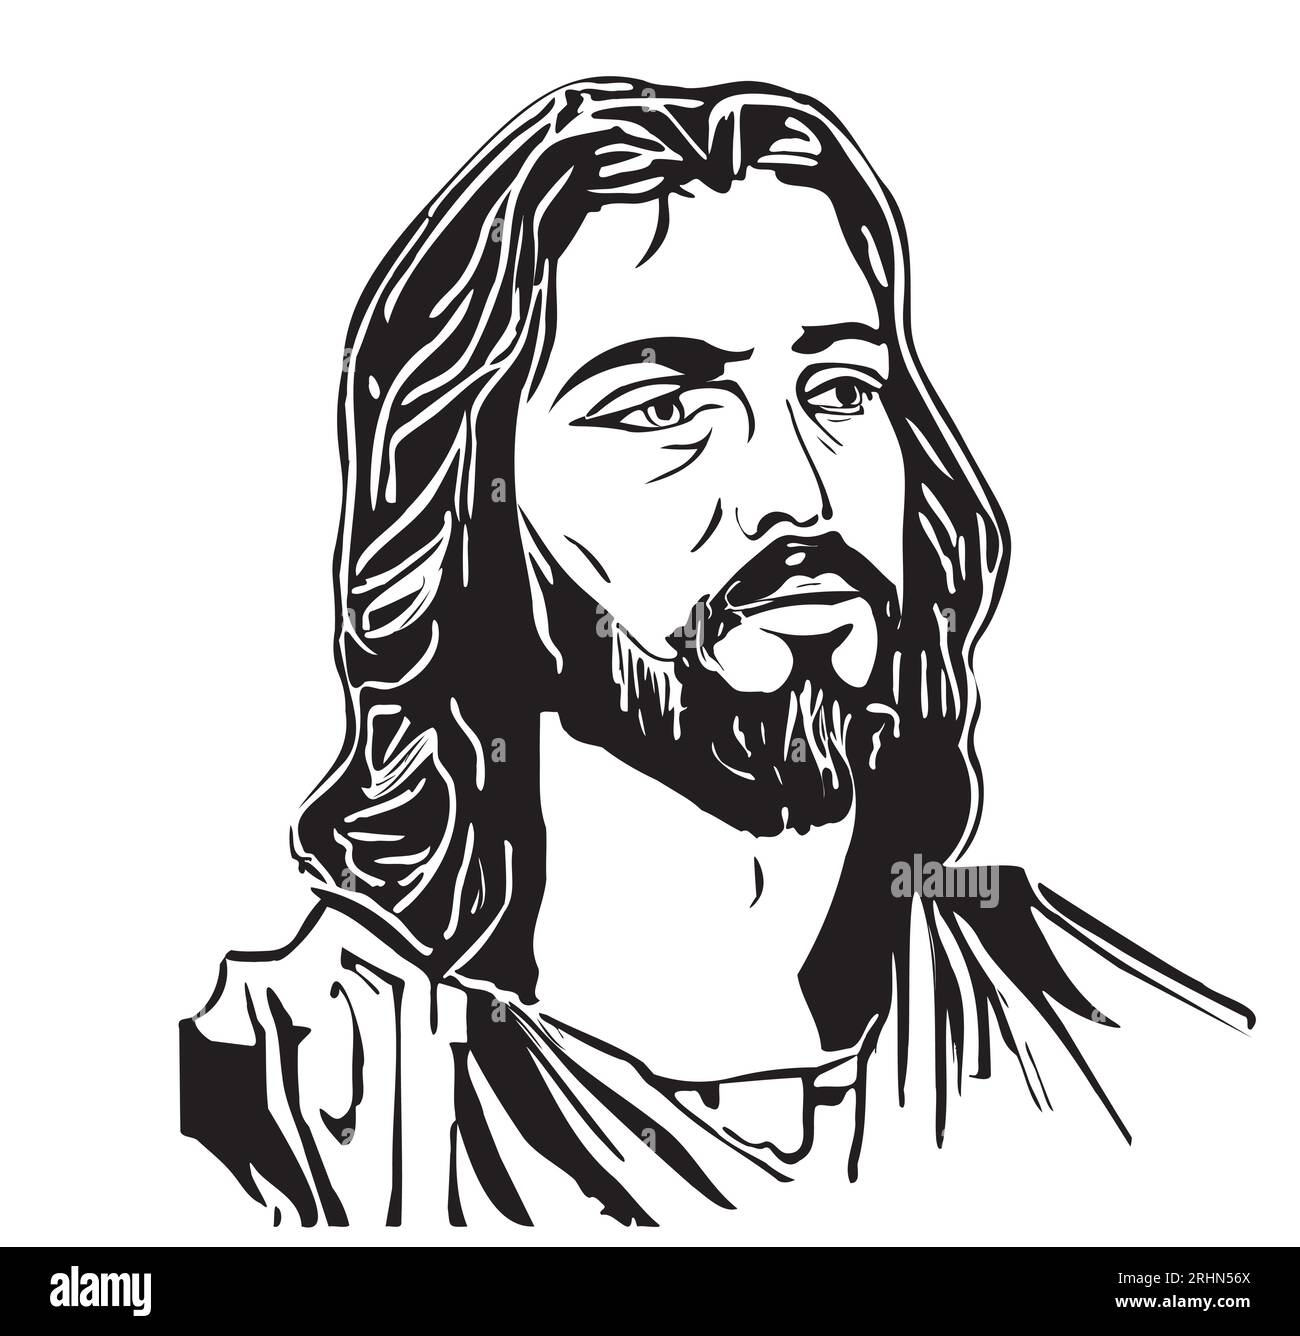 Visage de Jésus croquis dessiné à la main dans le style doodle Vector illustration Cartoon Illustration de Vecteur